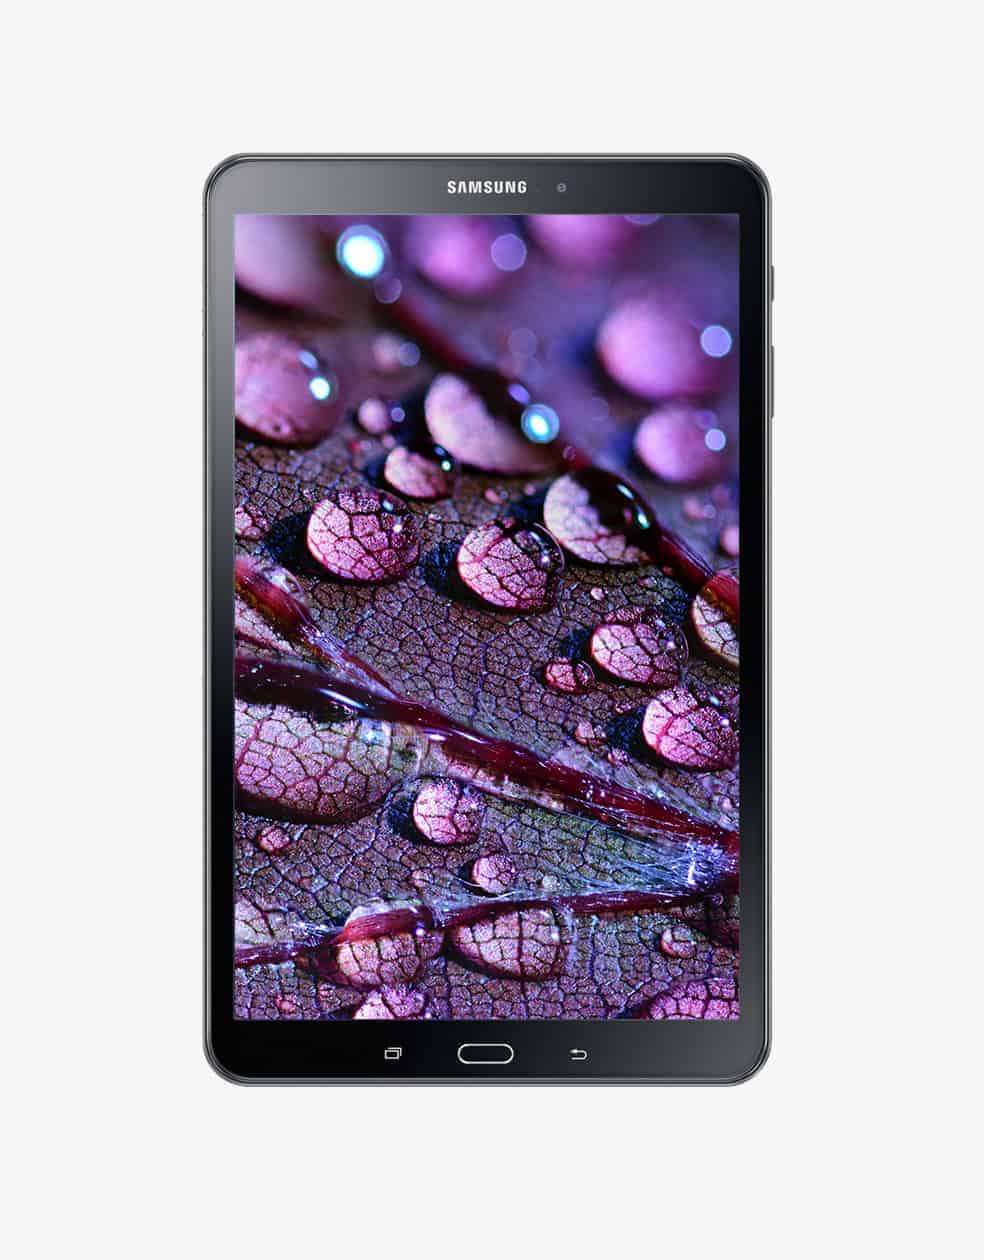 Samsung Galaxy Tab A 10.1 2016 Wi-Fi, black.